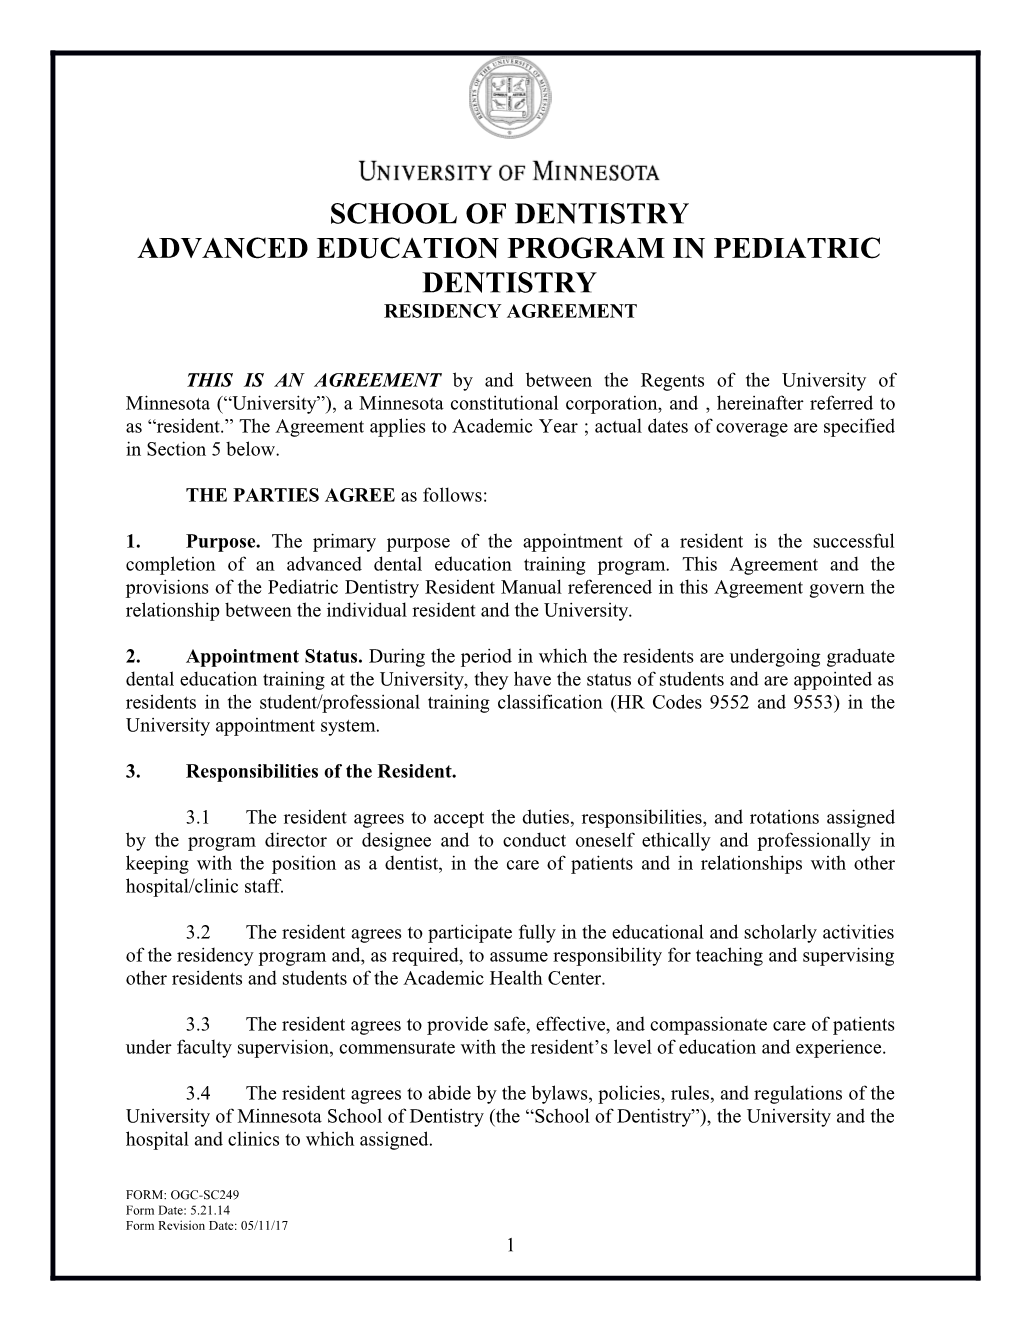 Advanced Education Program in Pediatric Dentistry